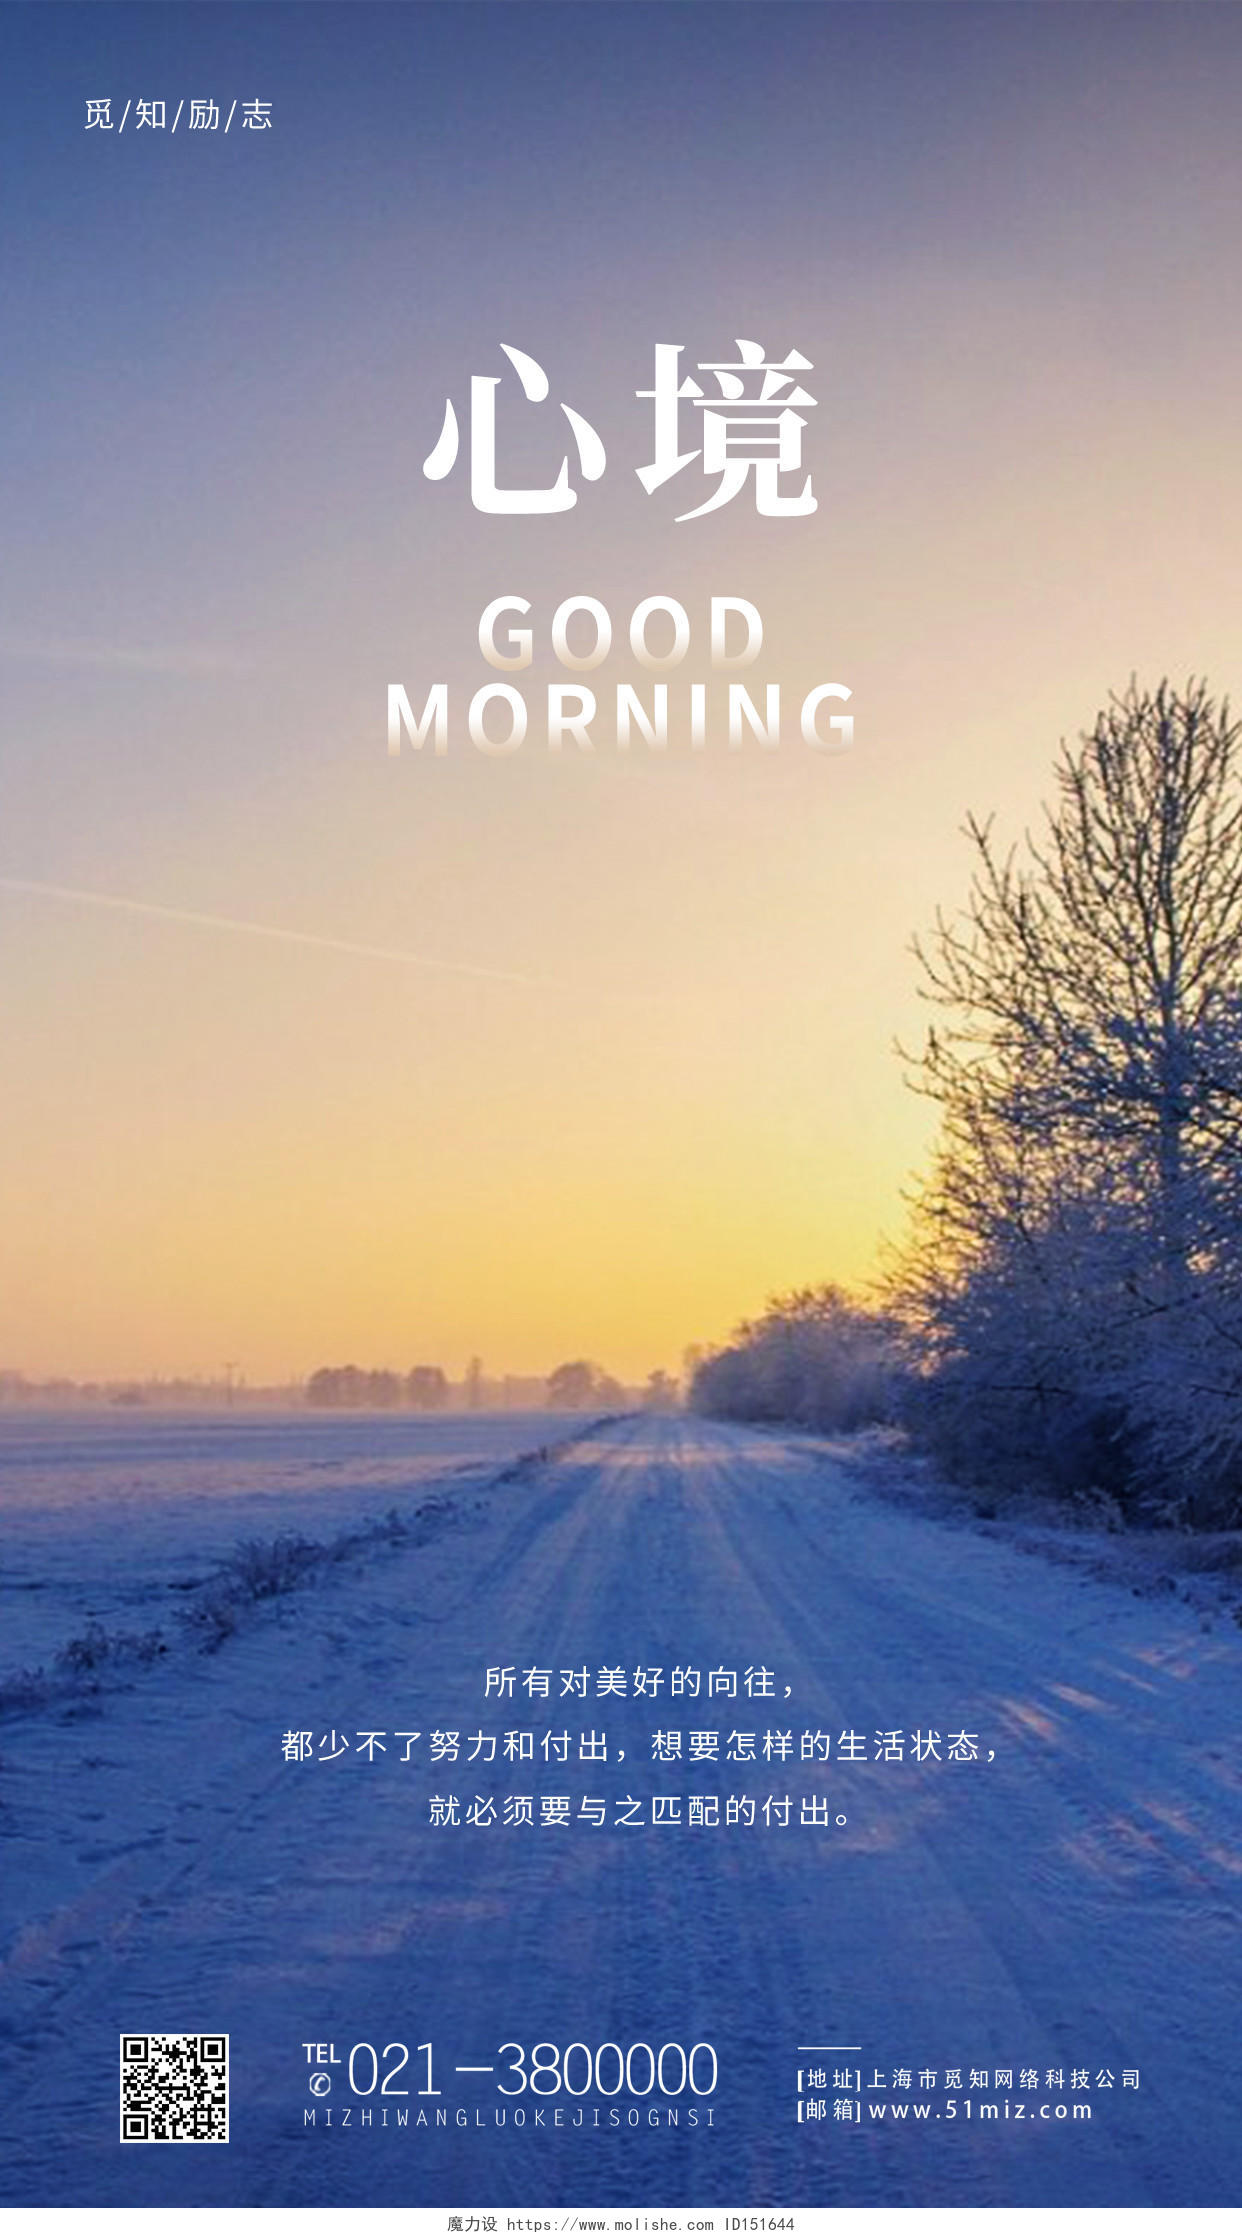 蓝色简约风心境早安正能量冬季自然景色早安日签手机海报简约风冬季自然景色早安日签